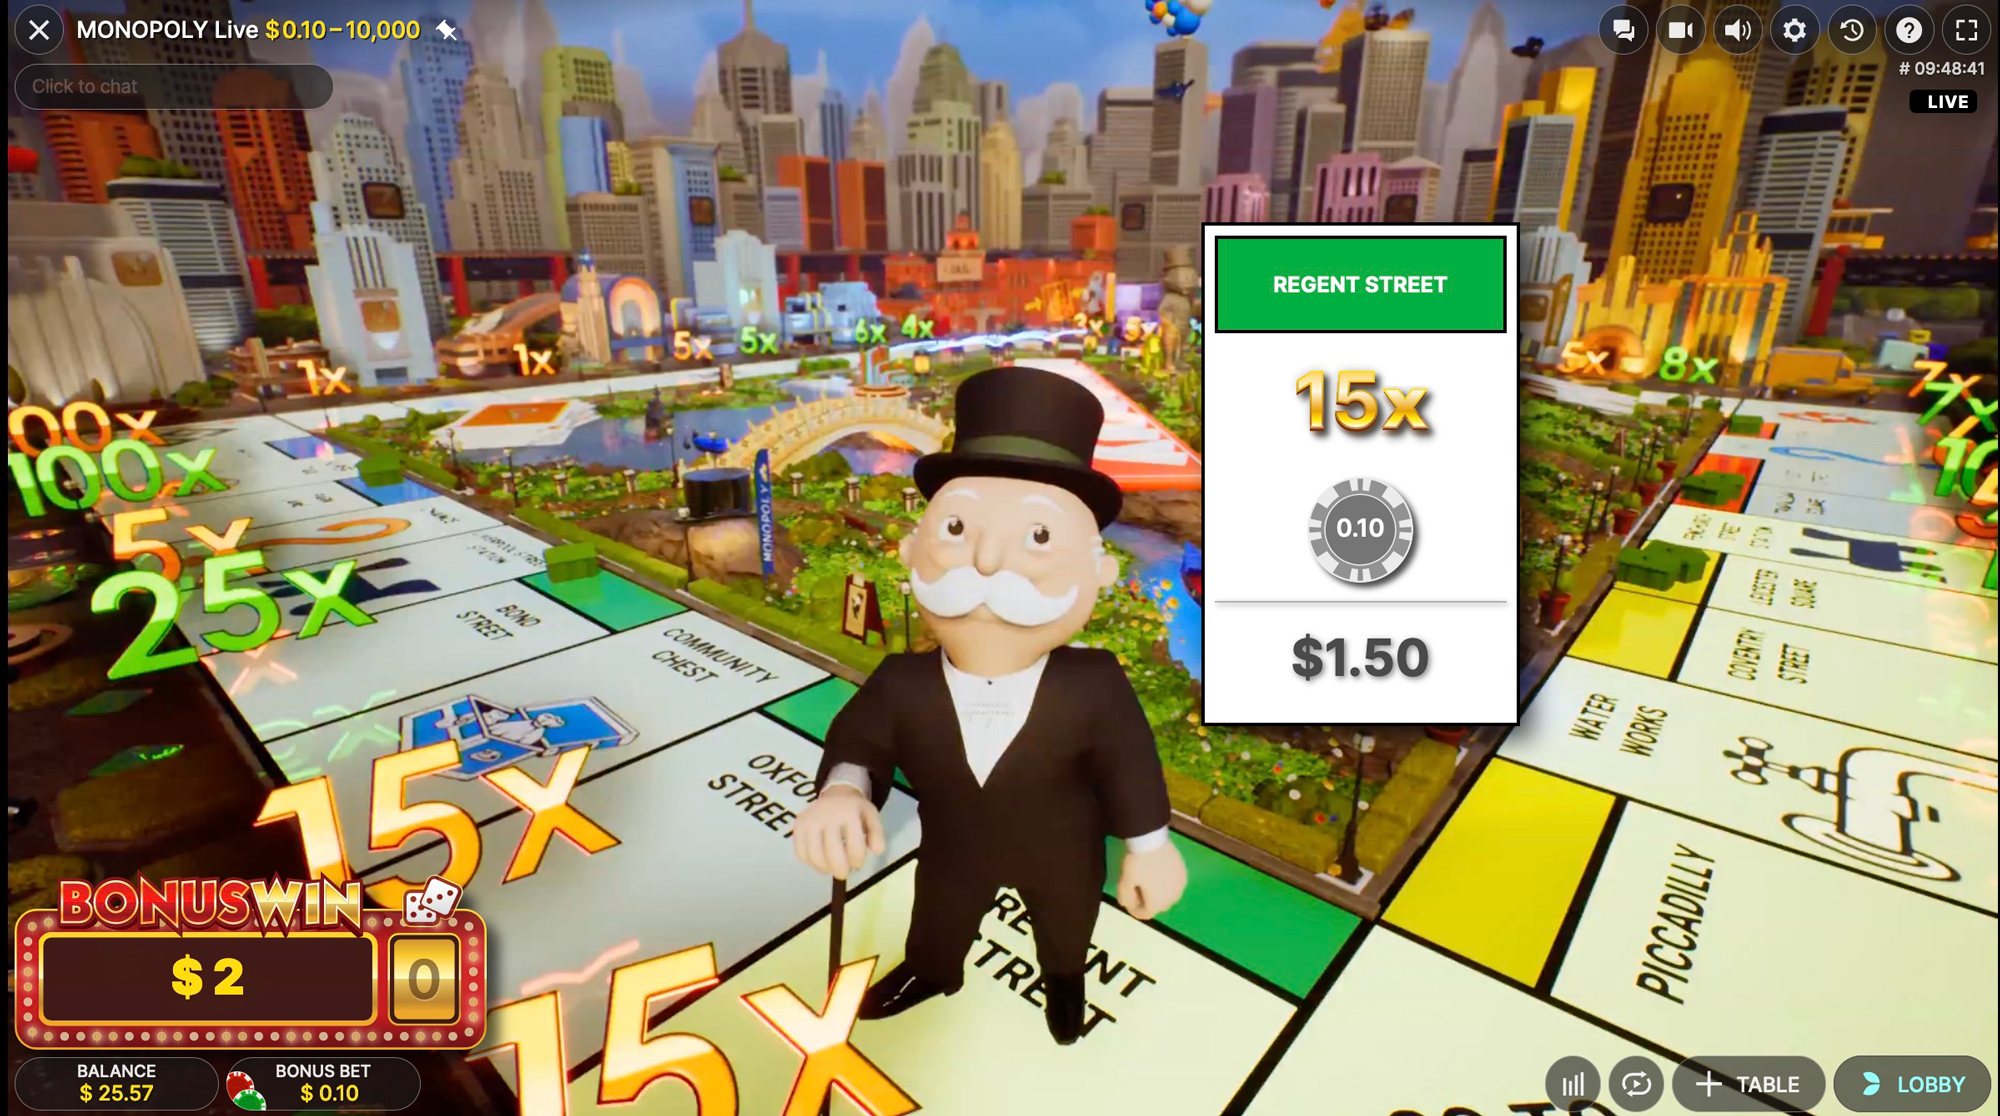 Interfaccia del gioco Monopoly Live